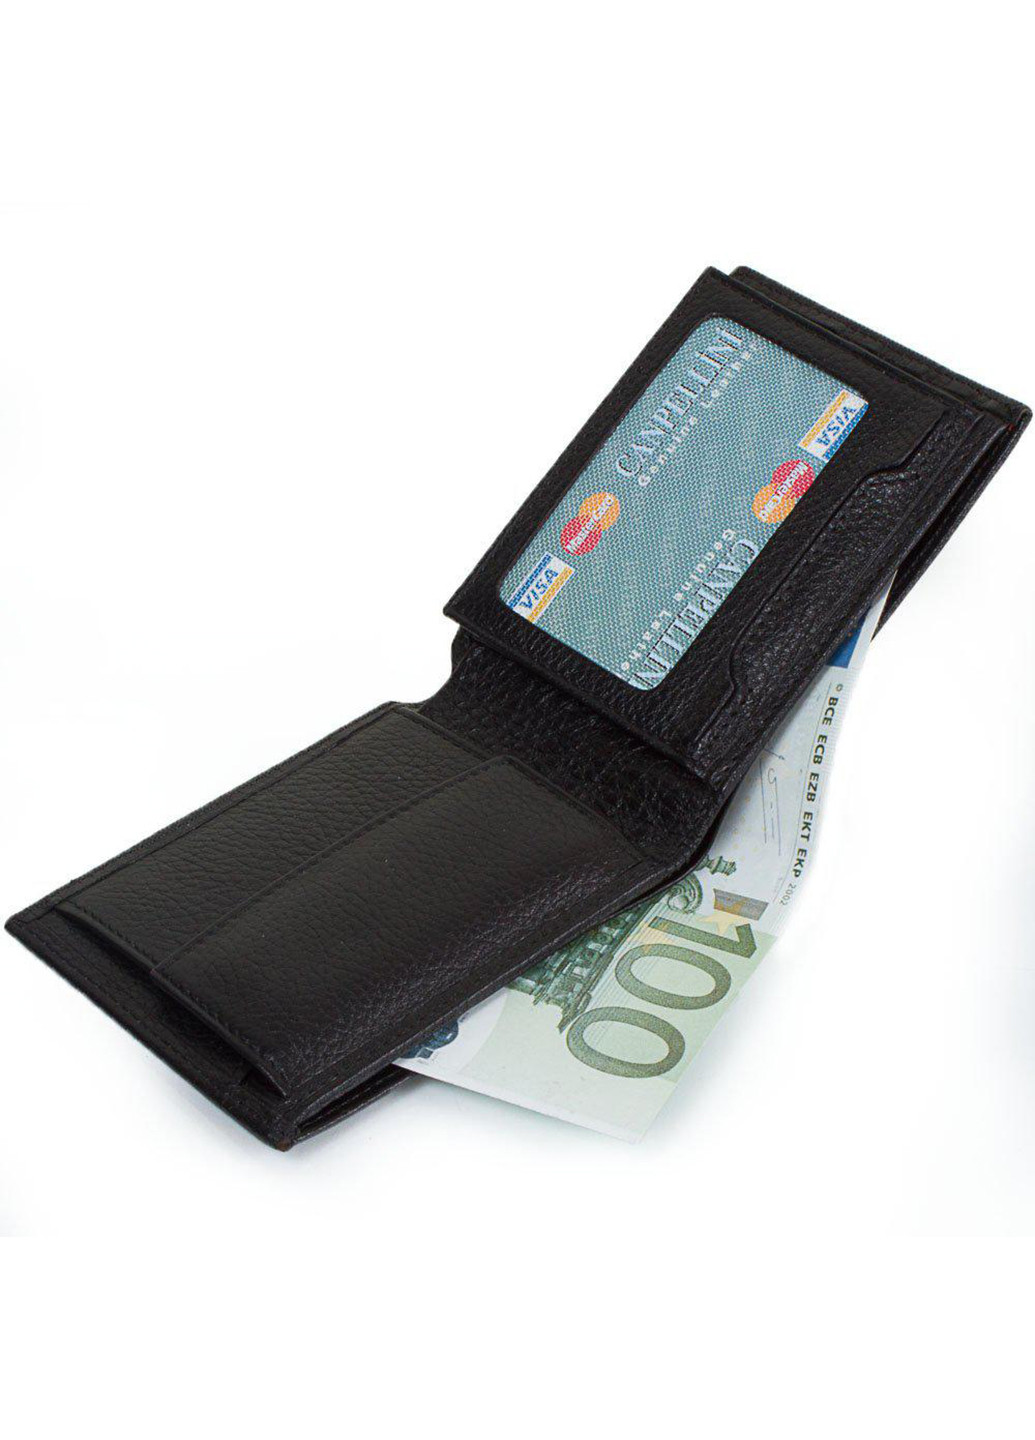 Чоловічий шкіряний гаманець 11х8,5х2,5 см Canpellini (252133827)